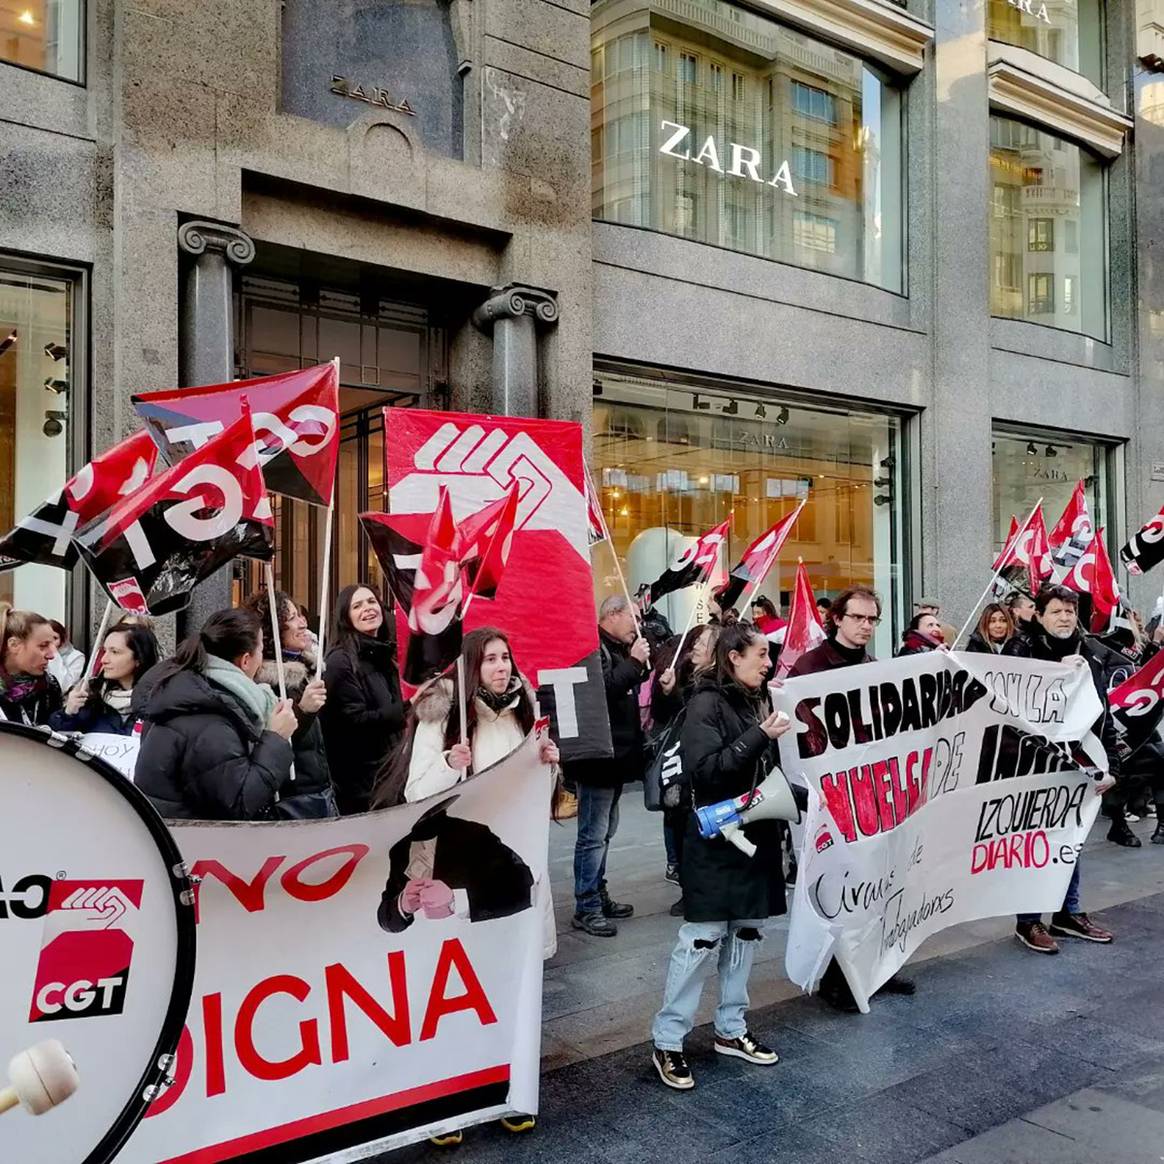 Photo Credits: Concentración frente a la tienda de Zara en la Gran Vía de Madrid el lunes 23 de enero de 2023. CGT.